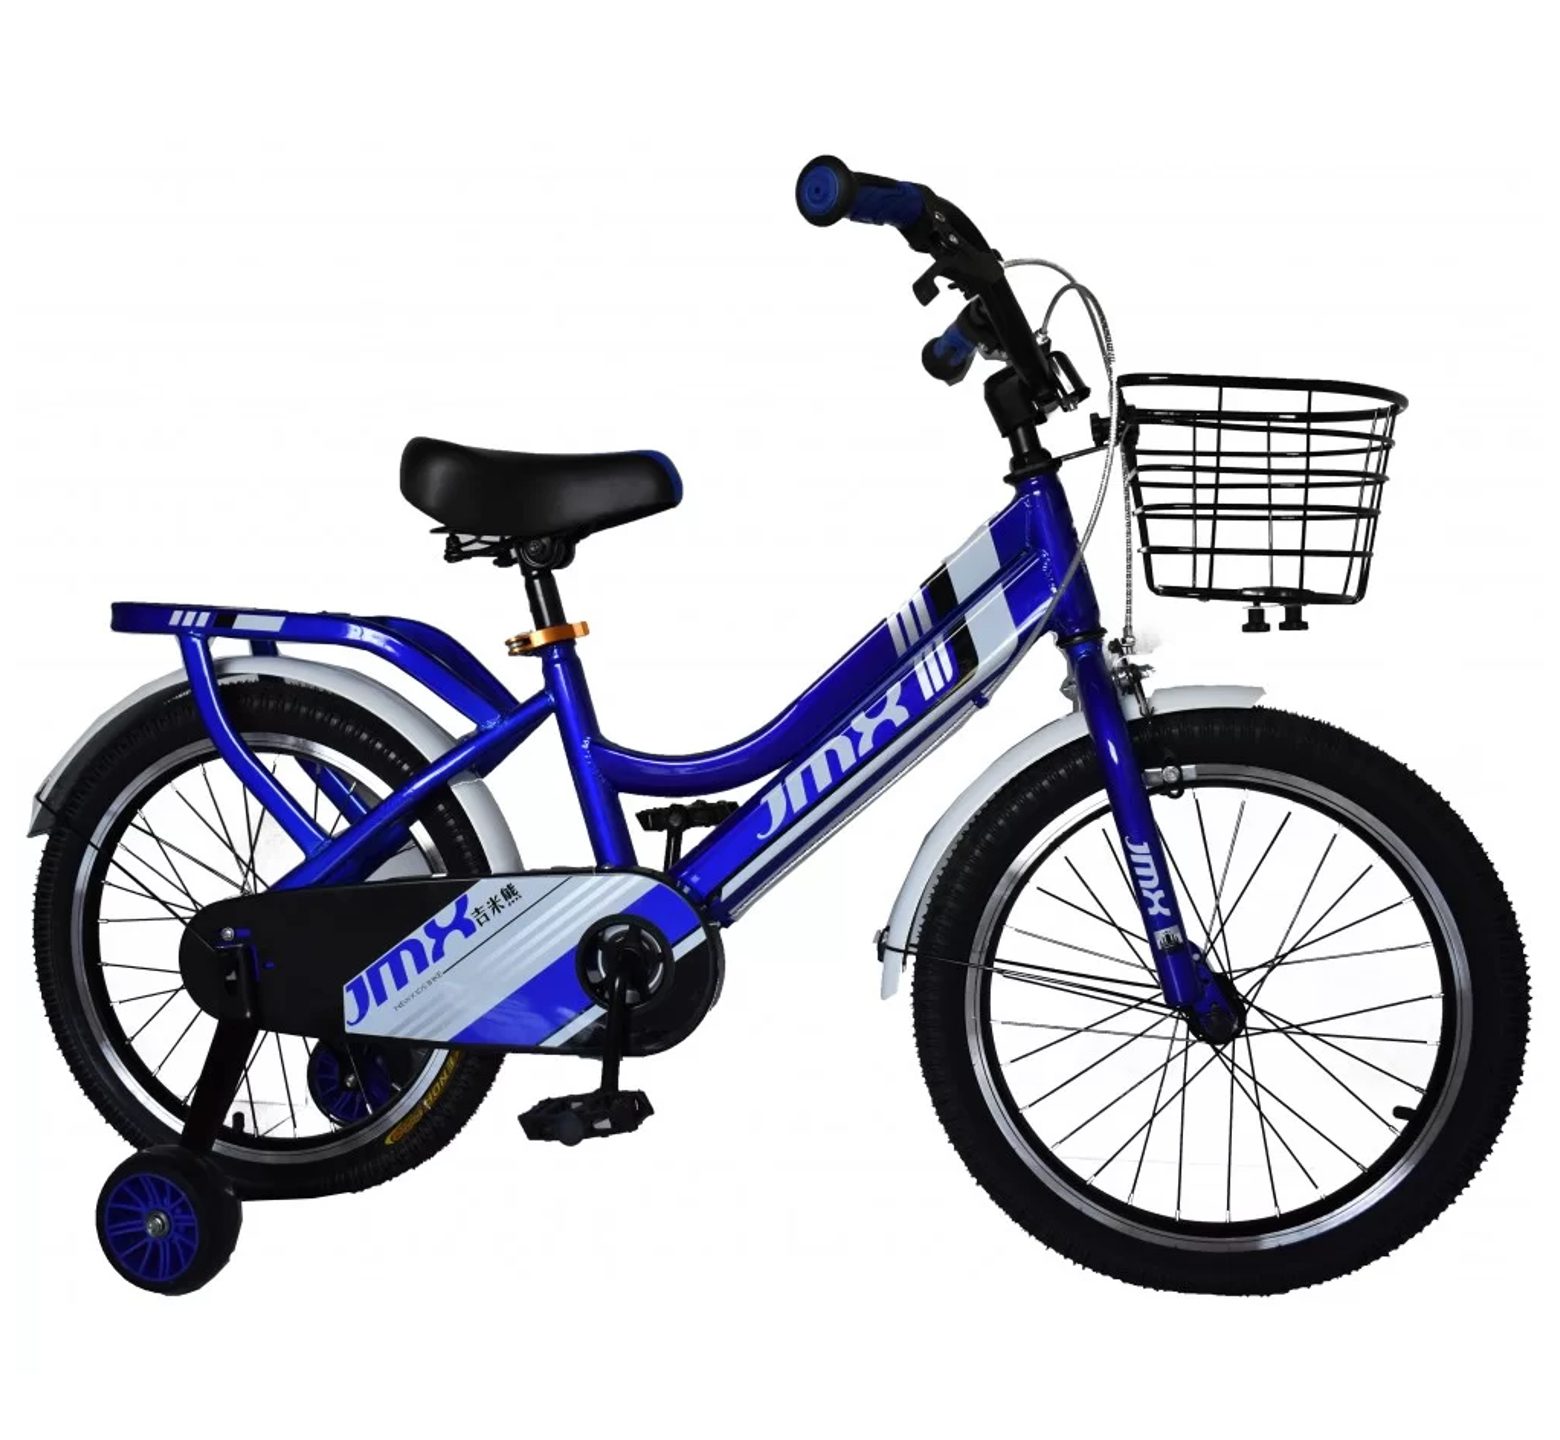 Ποδήλατο Jmx από 18 έως 20 ίντσες με καλάθι και σχάρα σε μπλε χρώμα